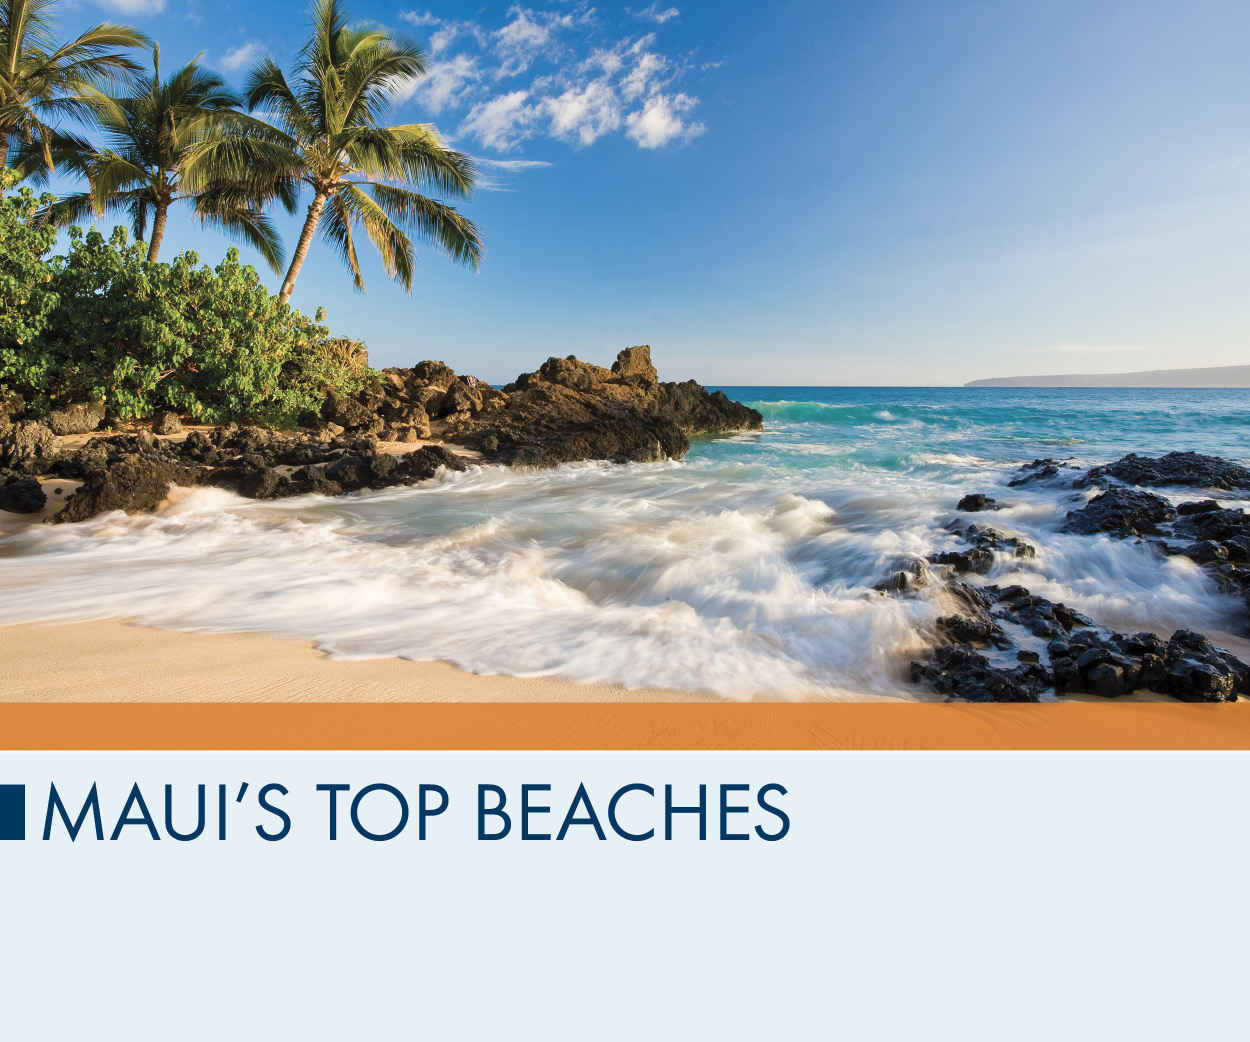 Maui’s Top Beaches